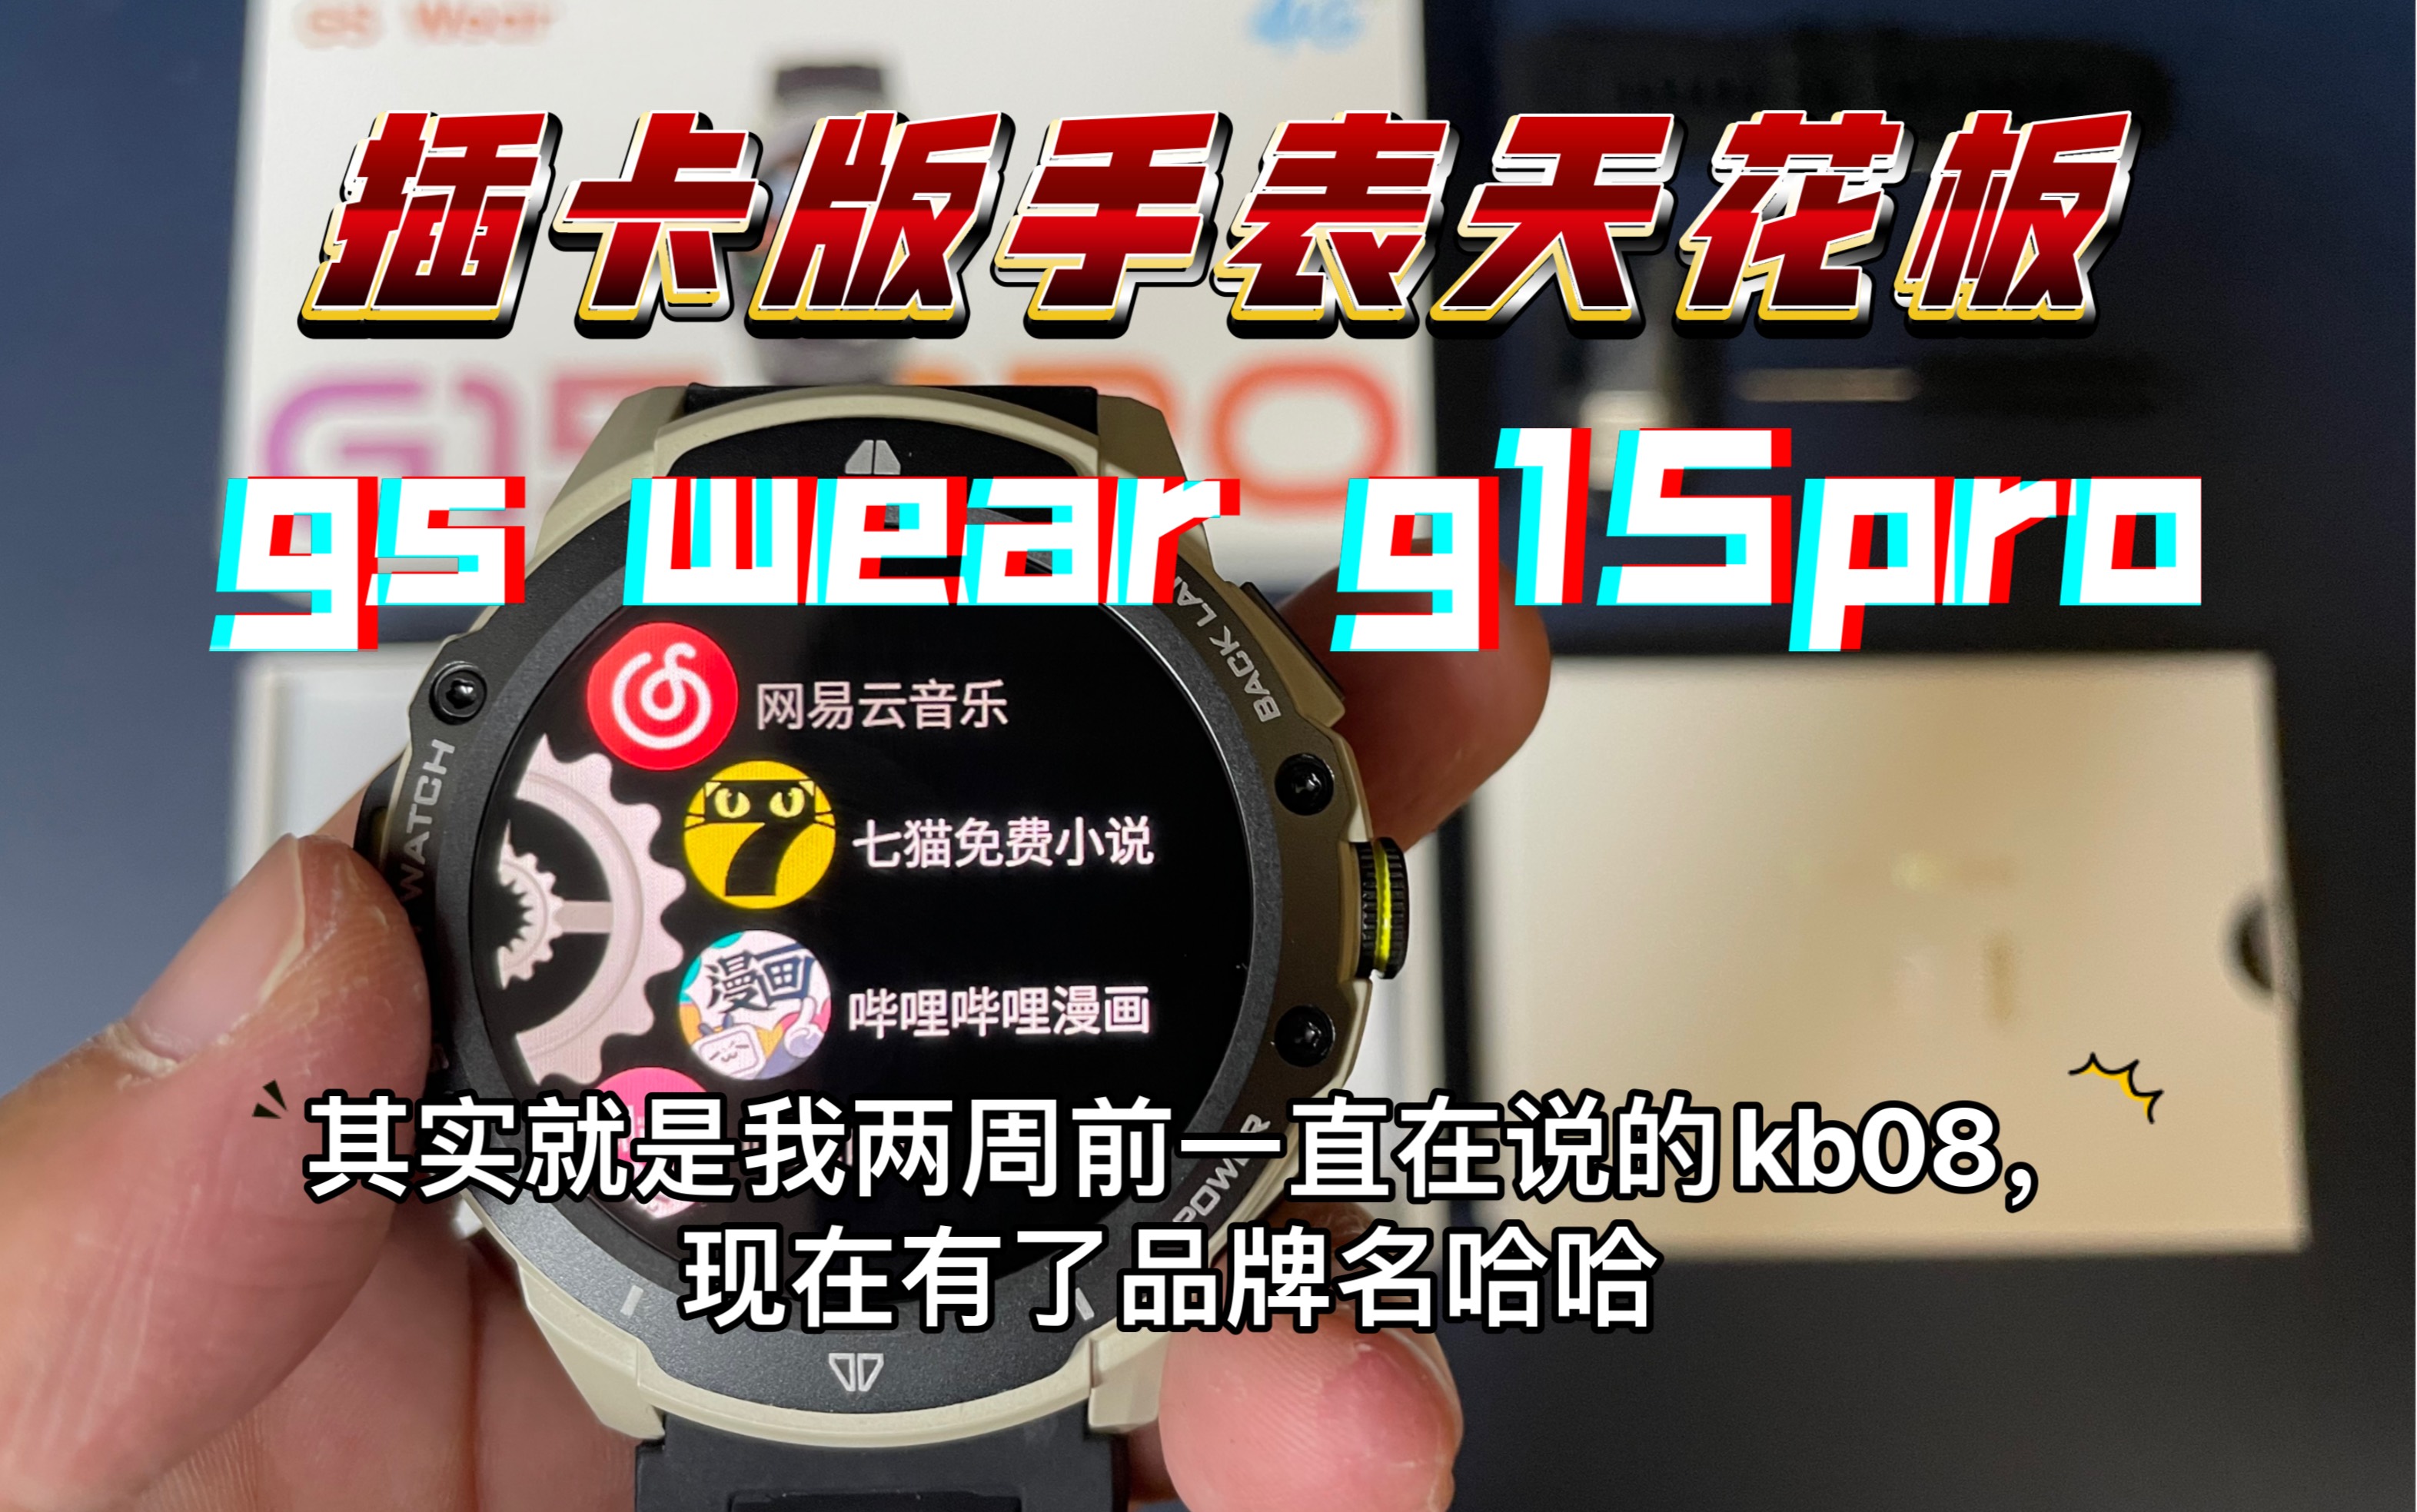 插卡版智能手表天花板，gswear的g15pro，其实就是我之前说的kb08，现在有了品牌名。推荐给不让带手机的特殊人群